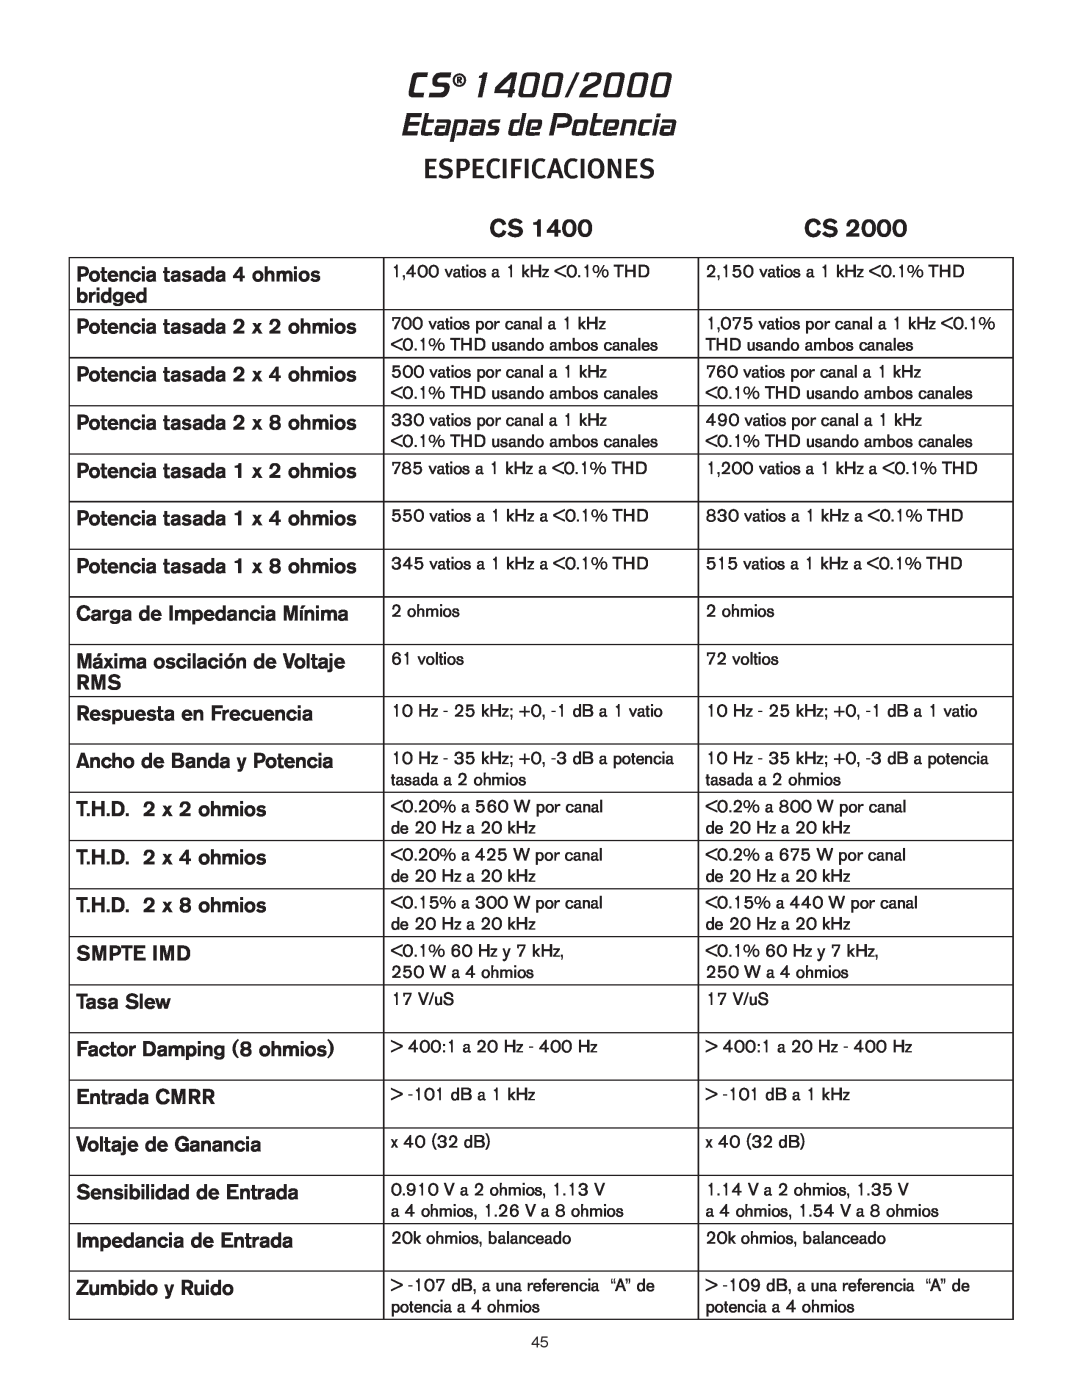 Peavey owner manual Etapas de Potencia, Especificaciones, CS 1400/2000 